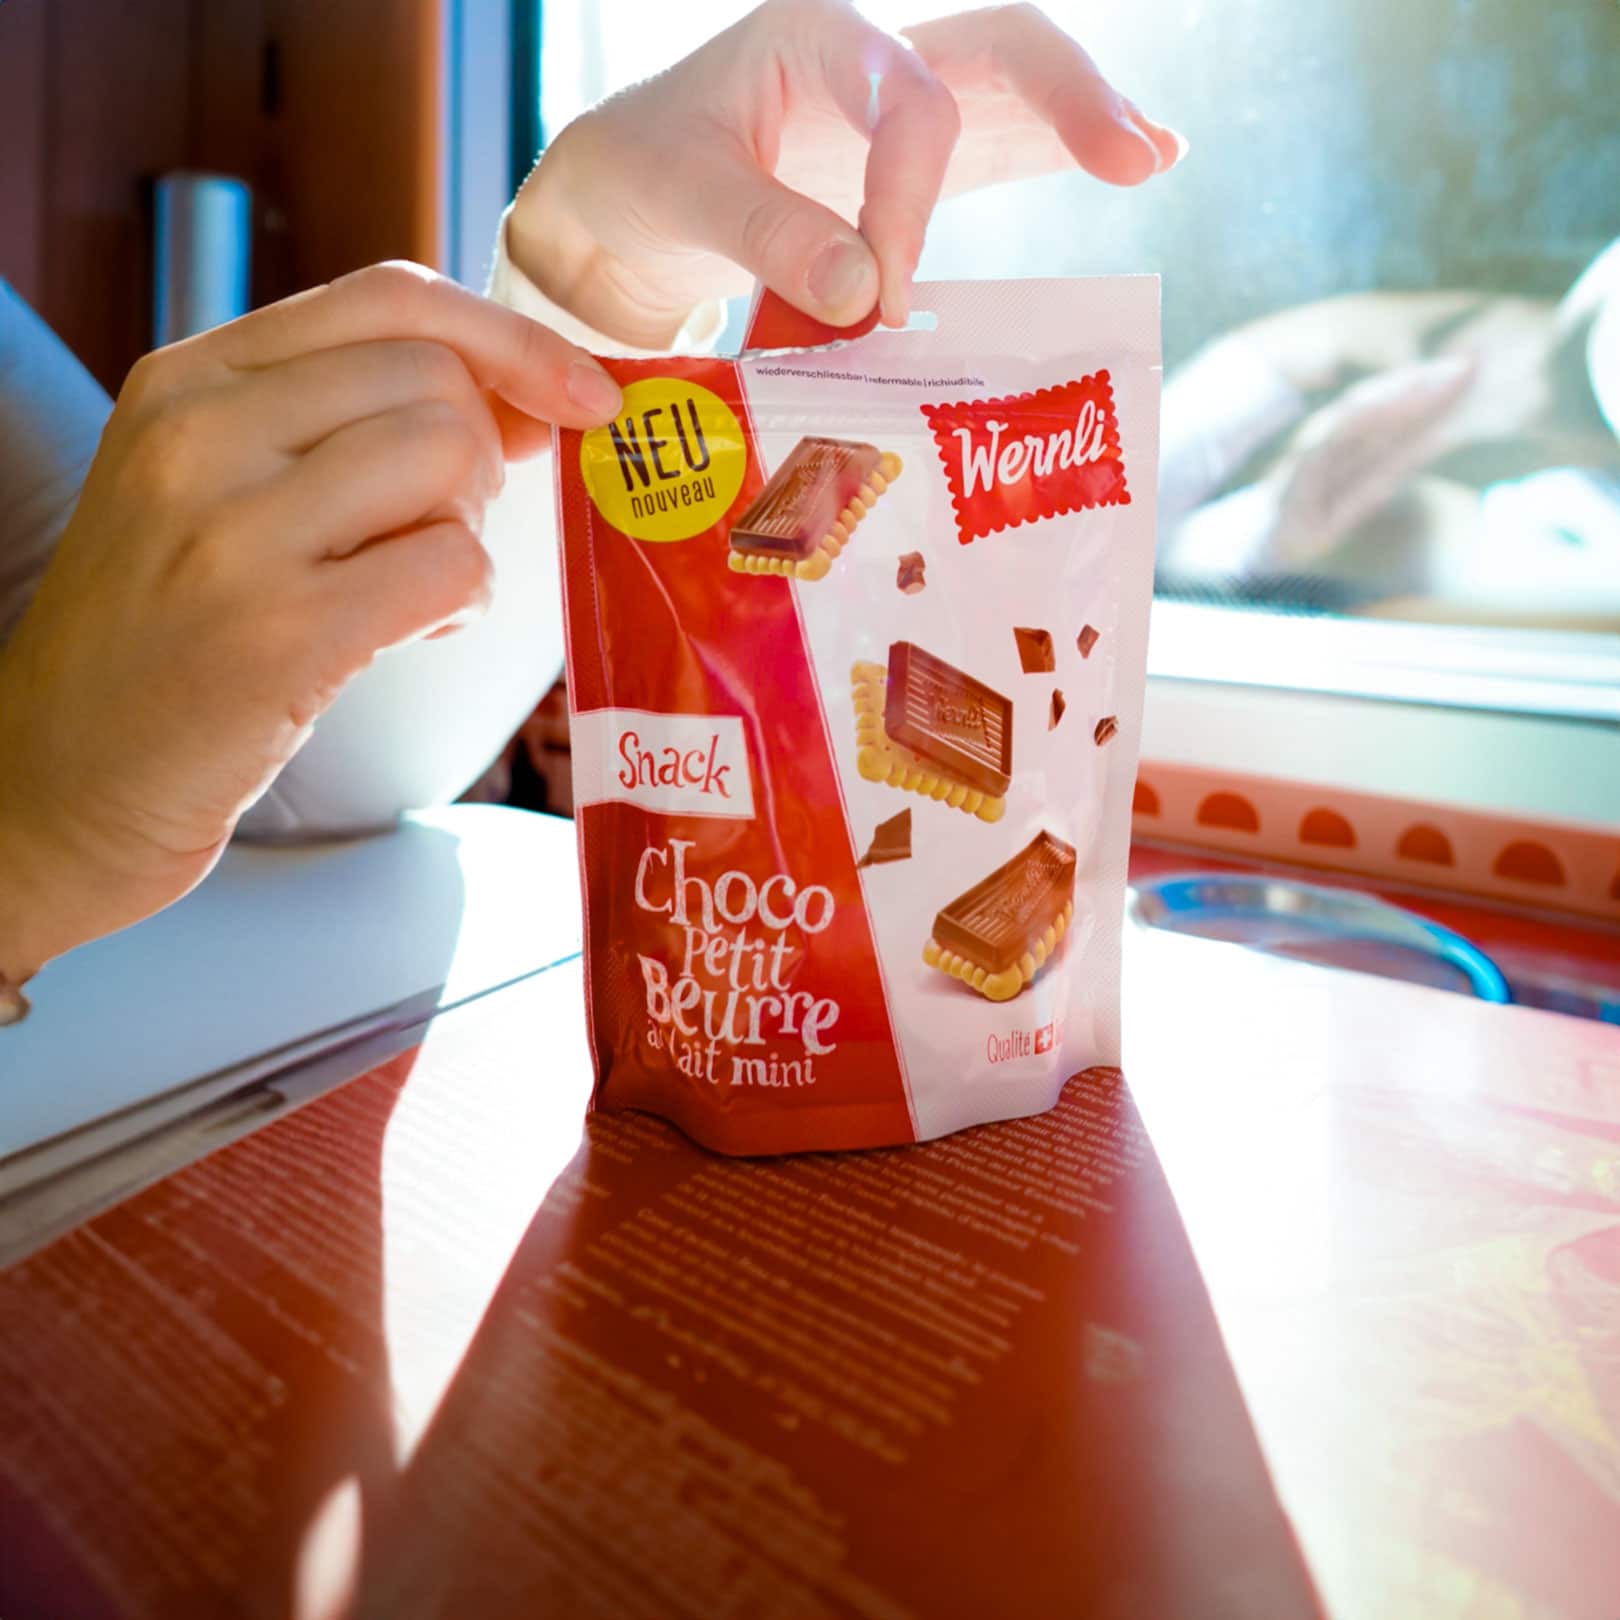 Choco Petit Beurre milk mini in a snack pack